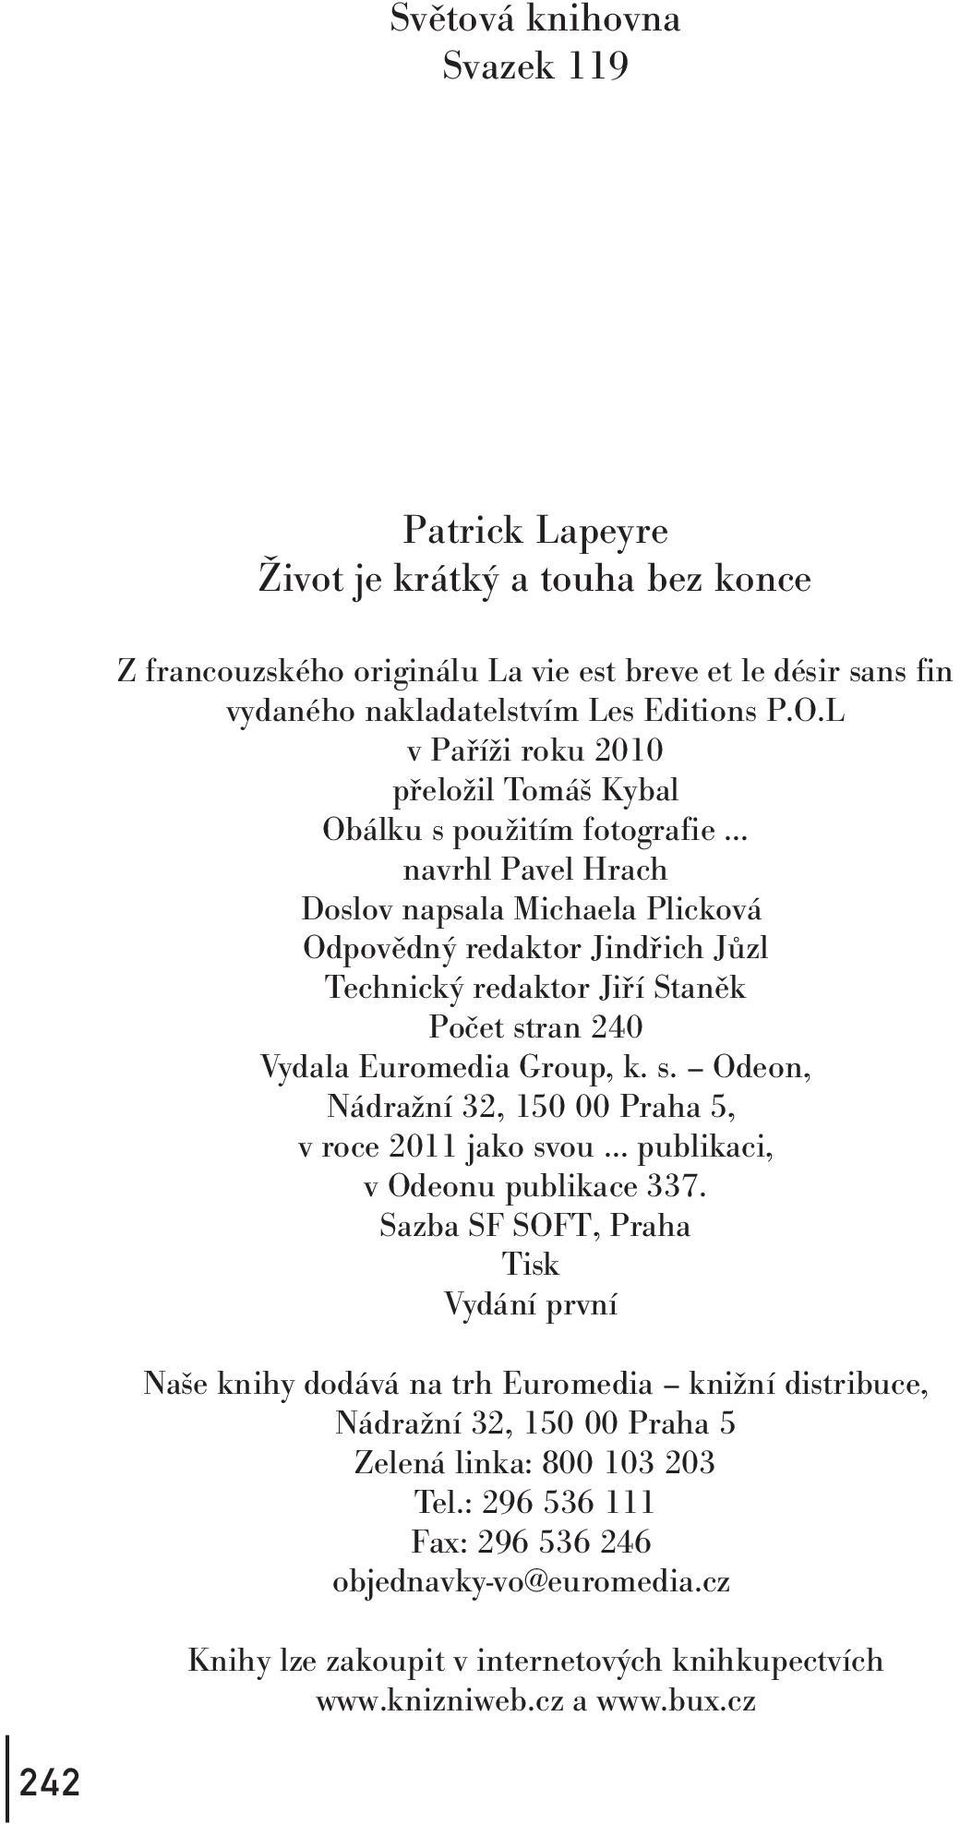 240 Vydala Euromedia Group, k. s. Odeon, Nádražní 32, 150 00 Praha 5, v roce 2011 jako svou publikaci, v Odeonu publikace 337.